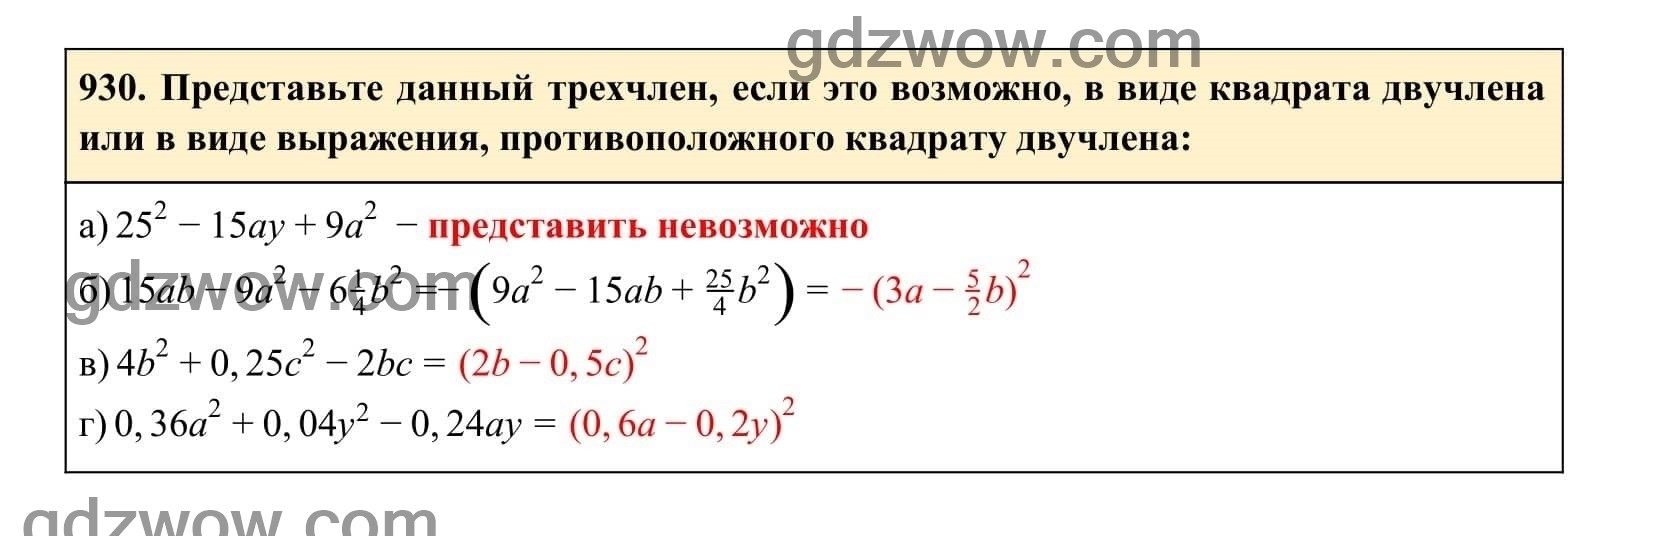 Упражнение 930 - ГДЗ по Алгебре 7 класс Учебник Макарычев (решебник) - GDZwow